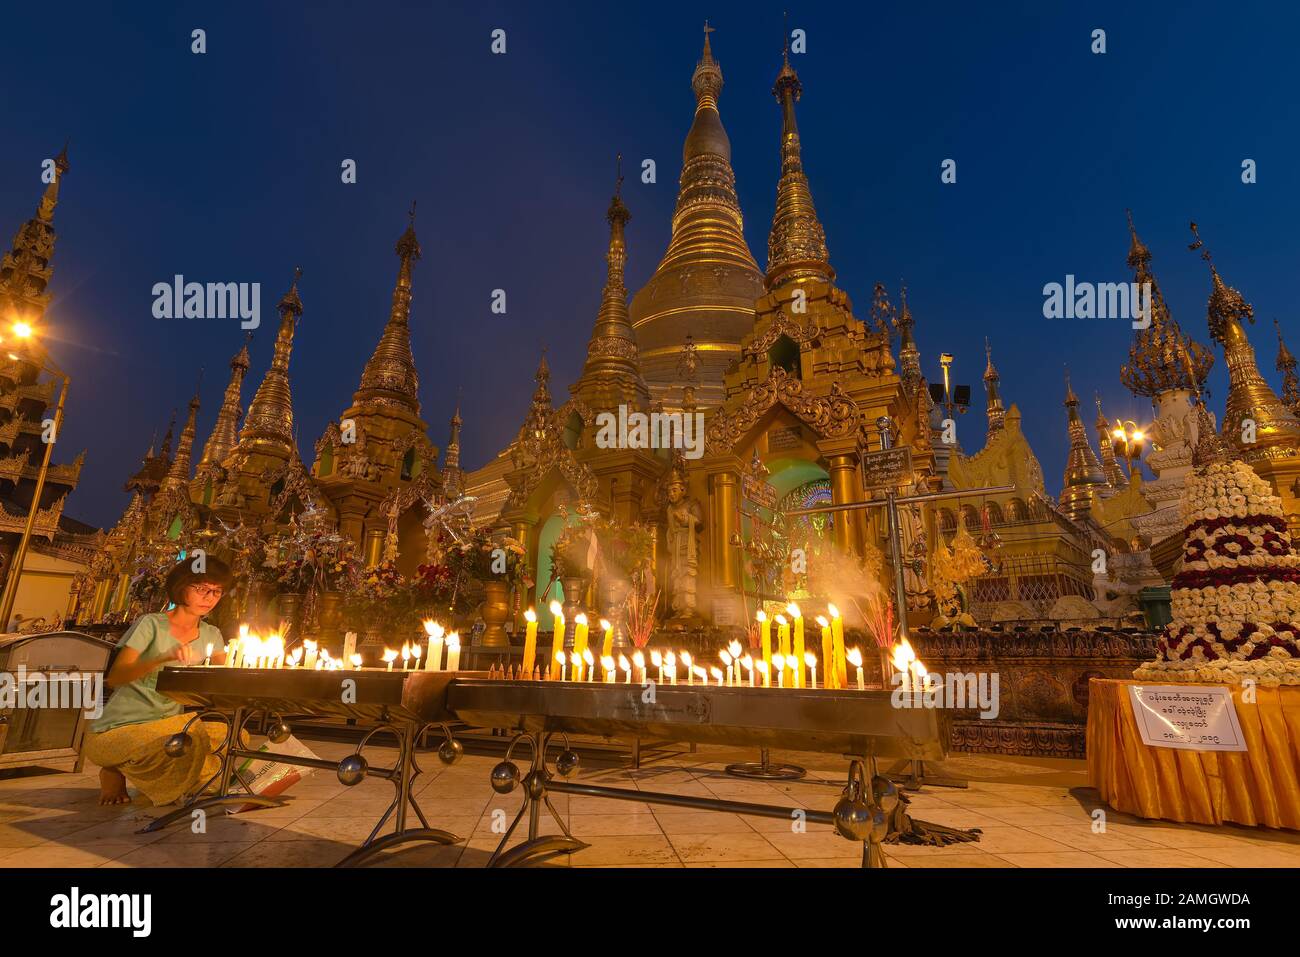 Yangon, Myanmar - 19 décembre 2019 : une femme bougie lumière en face de la pagode Shwedagon au crépuscule. Pagode Shwedagon pagoda est la plus sacrée de l'homme au Myanmar Banque D'Images